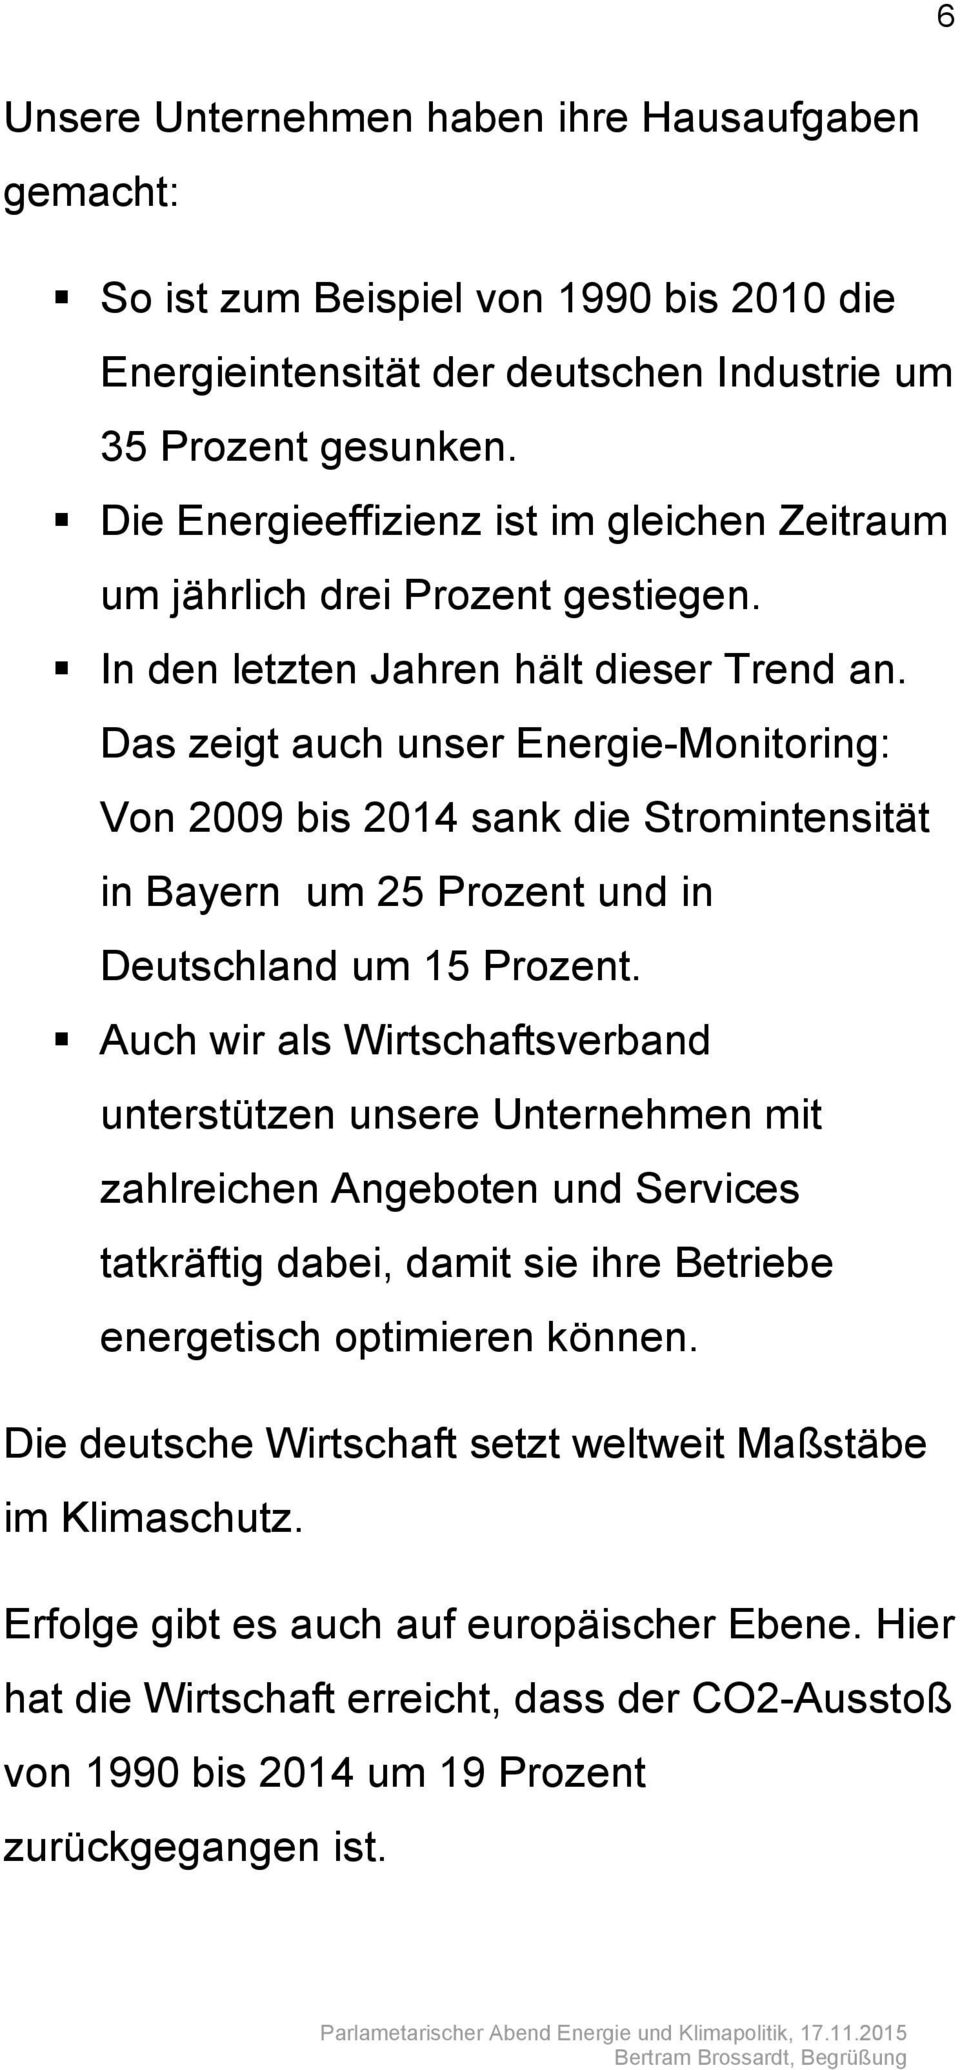 Das zeigt auch unser Energie-Monitoring: Von 2009 bis 2014 sank die Stromintensität in Bayern um 25 Prozent und in Deutschland um 15 Prozent.